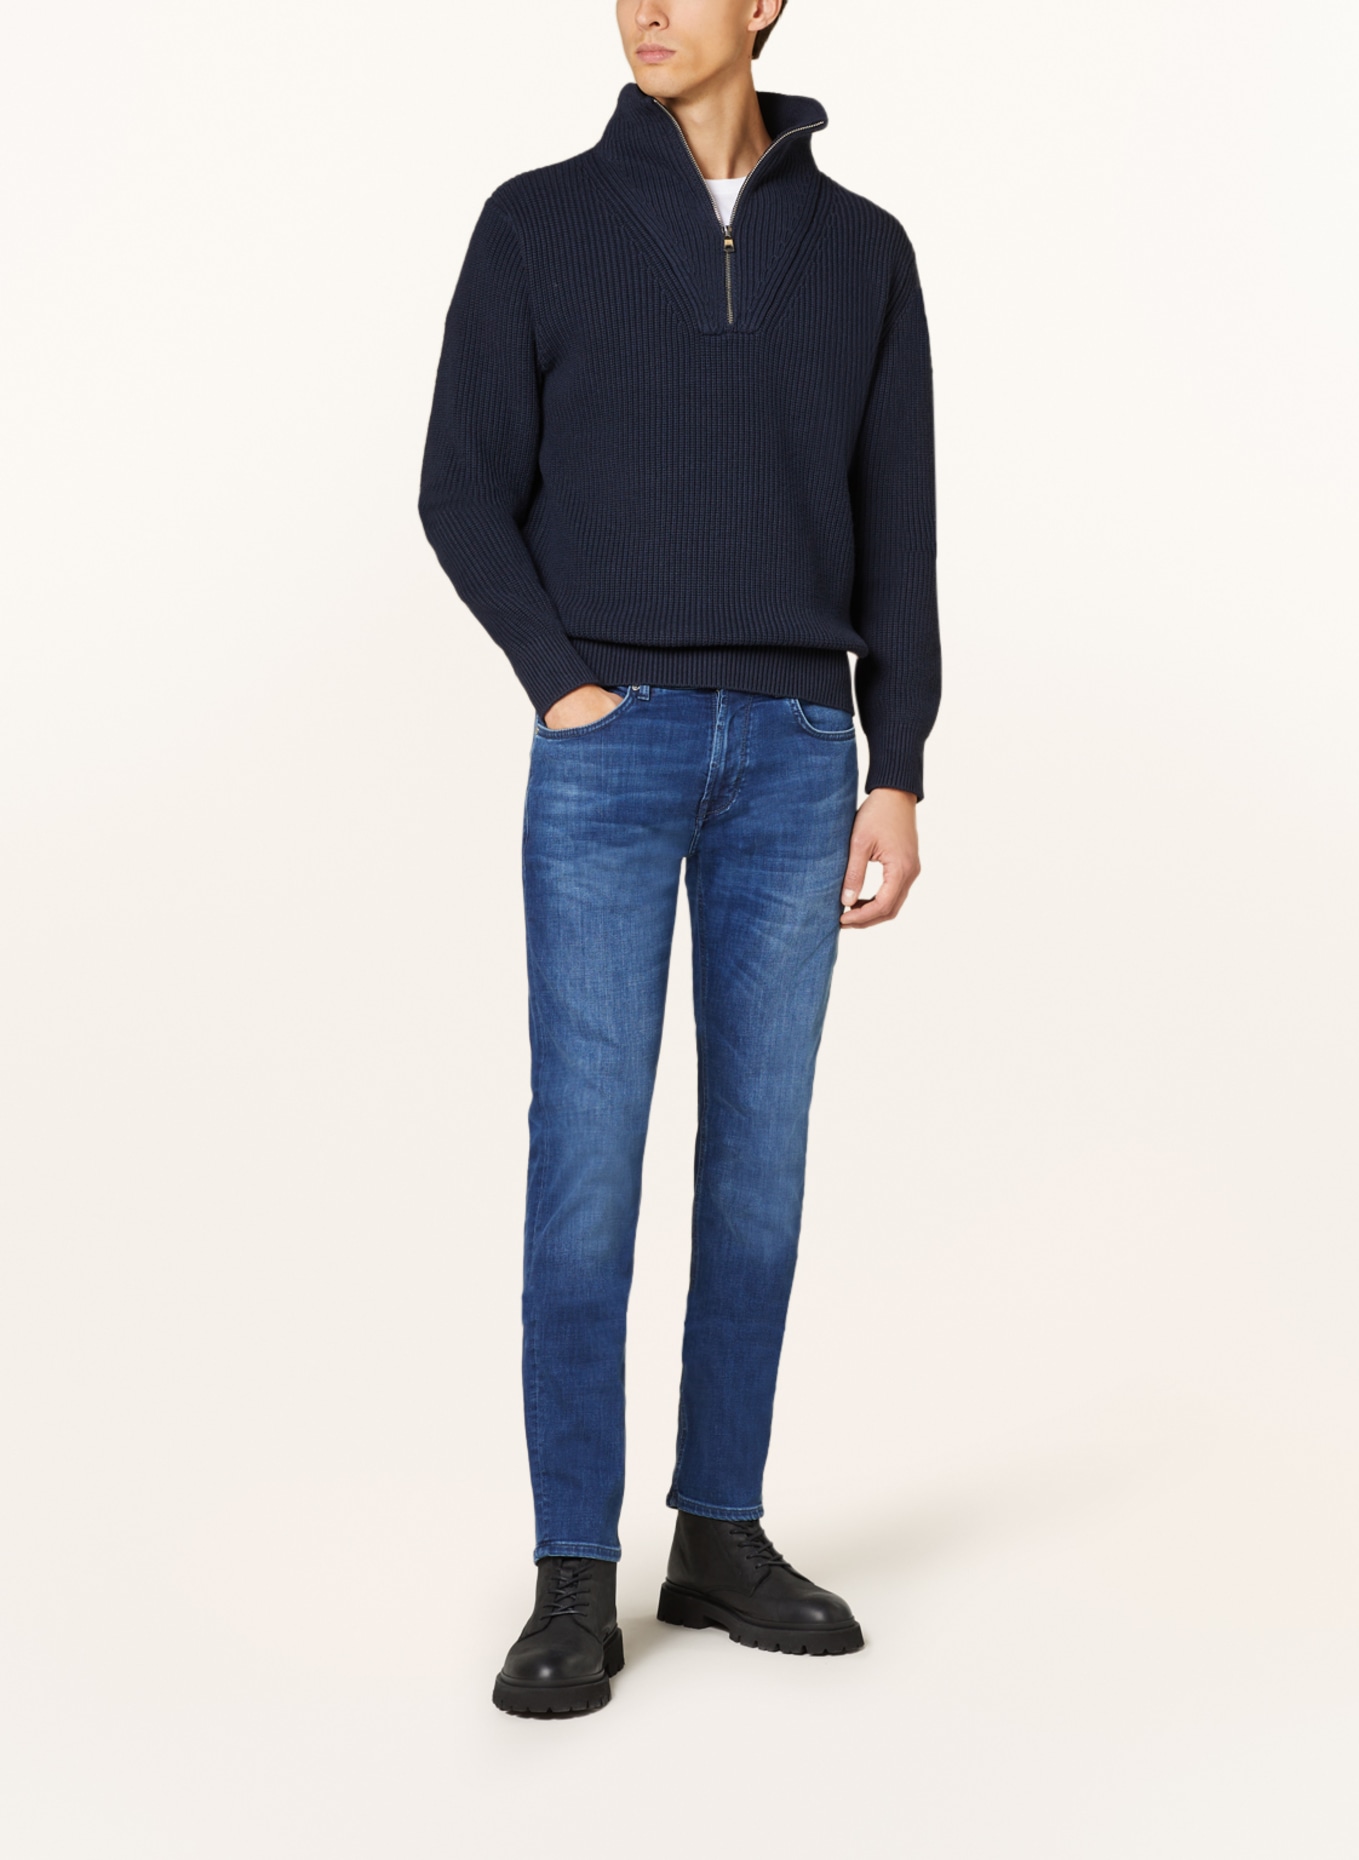 BALDESSARINI Jeans Regular Fit, Farbe: 6825 blue used whisker (Bild 2)